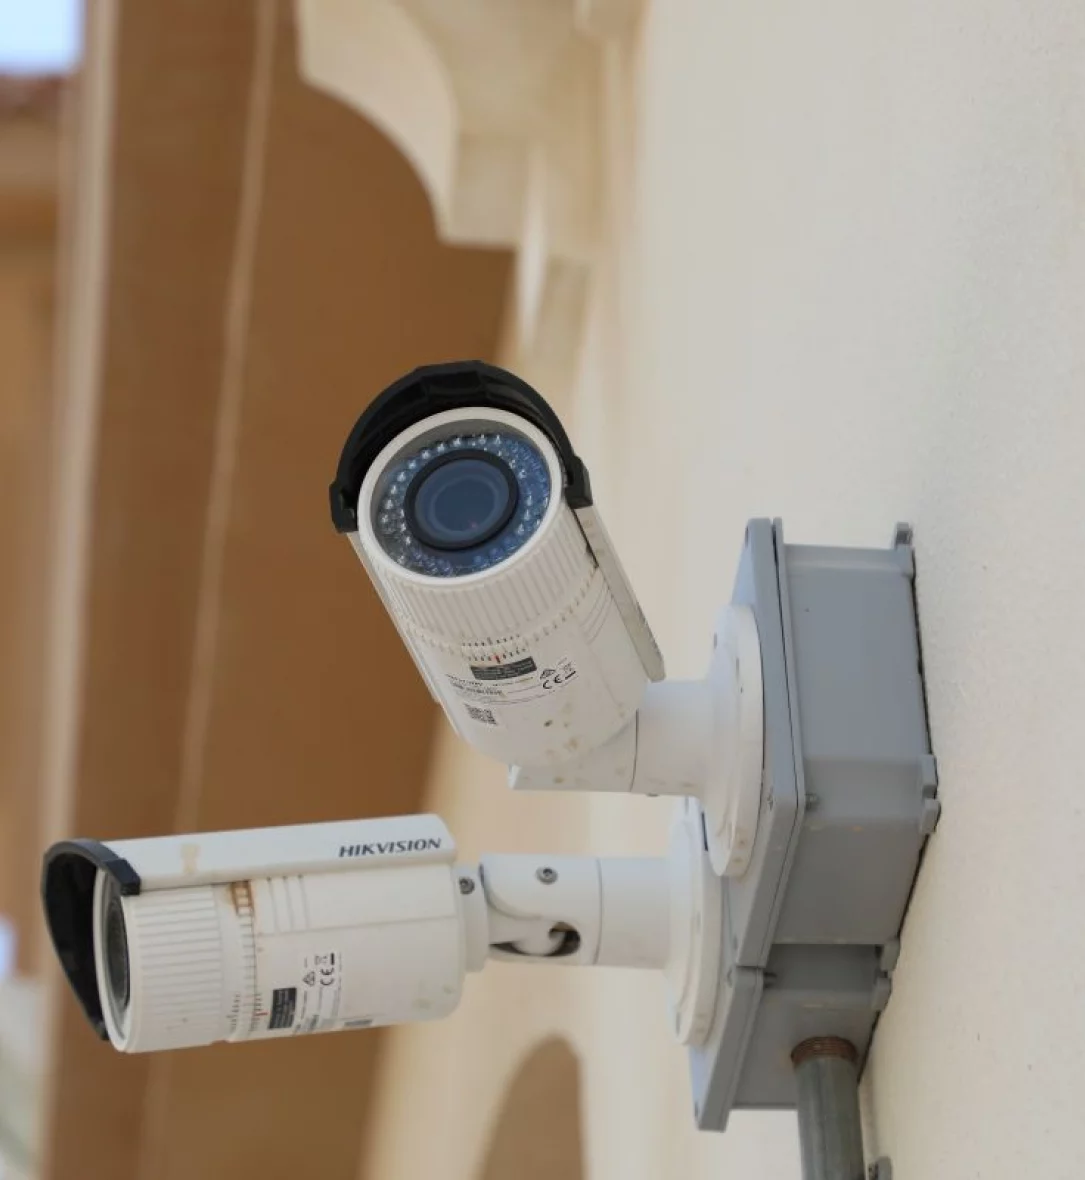 تسجيل كاميرات المراقبة CCTV Doha Qatar الدوحة قطر